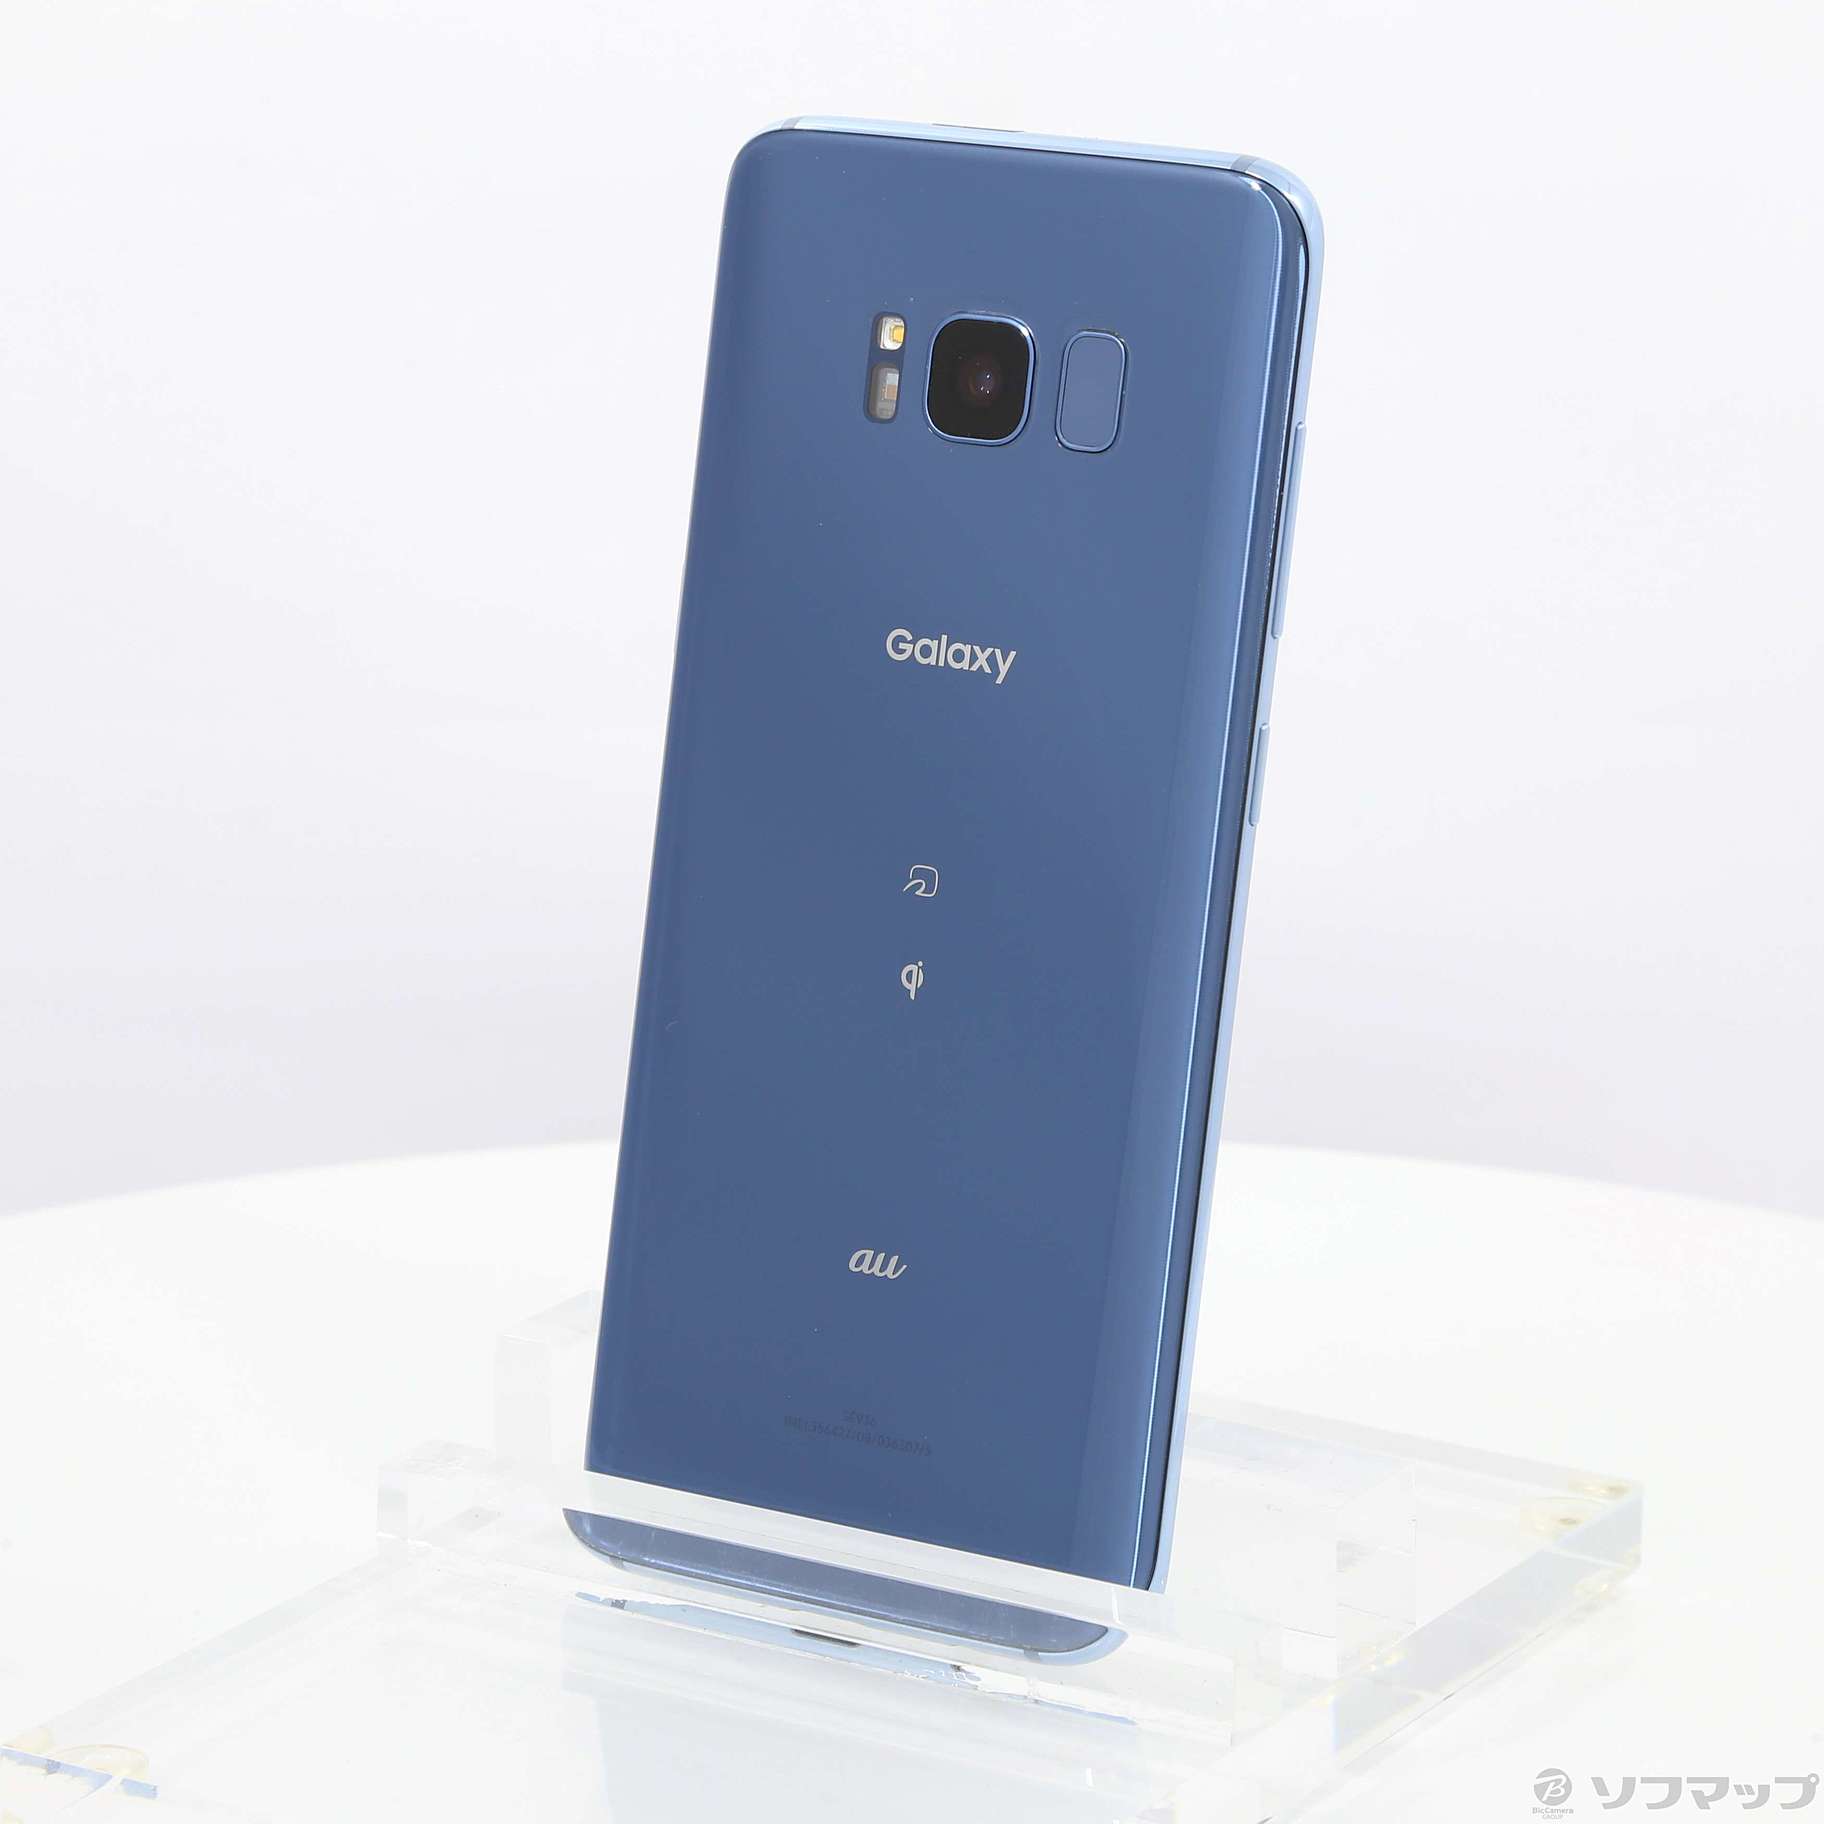 セール対象品 Galaxy S8 64GB コーラルブルー SCV36 auロック解除SIMフリー